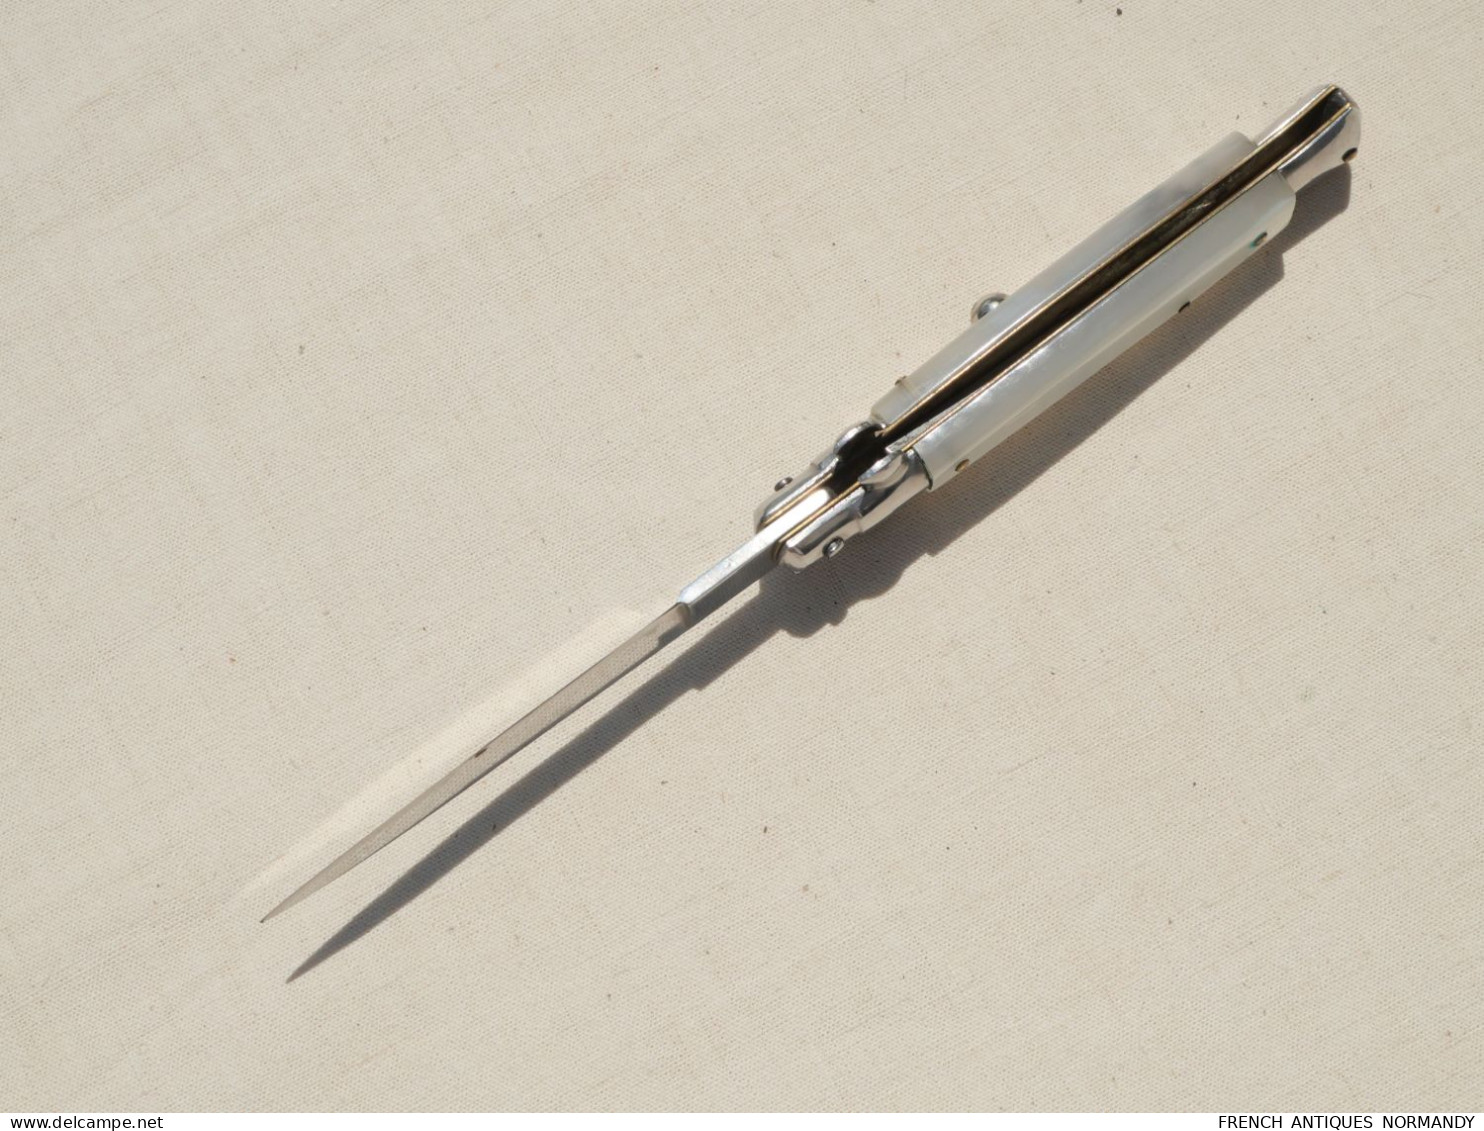 ancien couteau automatique à cran d'arret et sureté marqué ROSTFREI fabrication allemande années 70